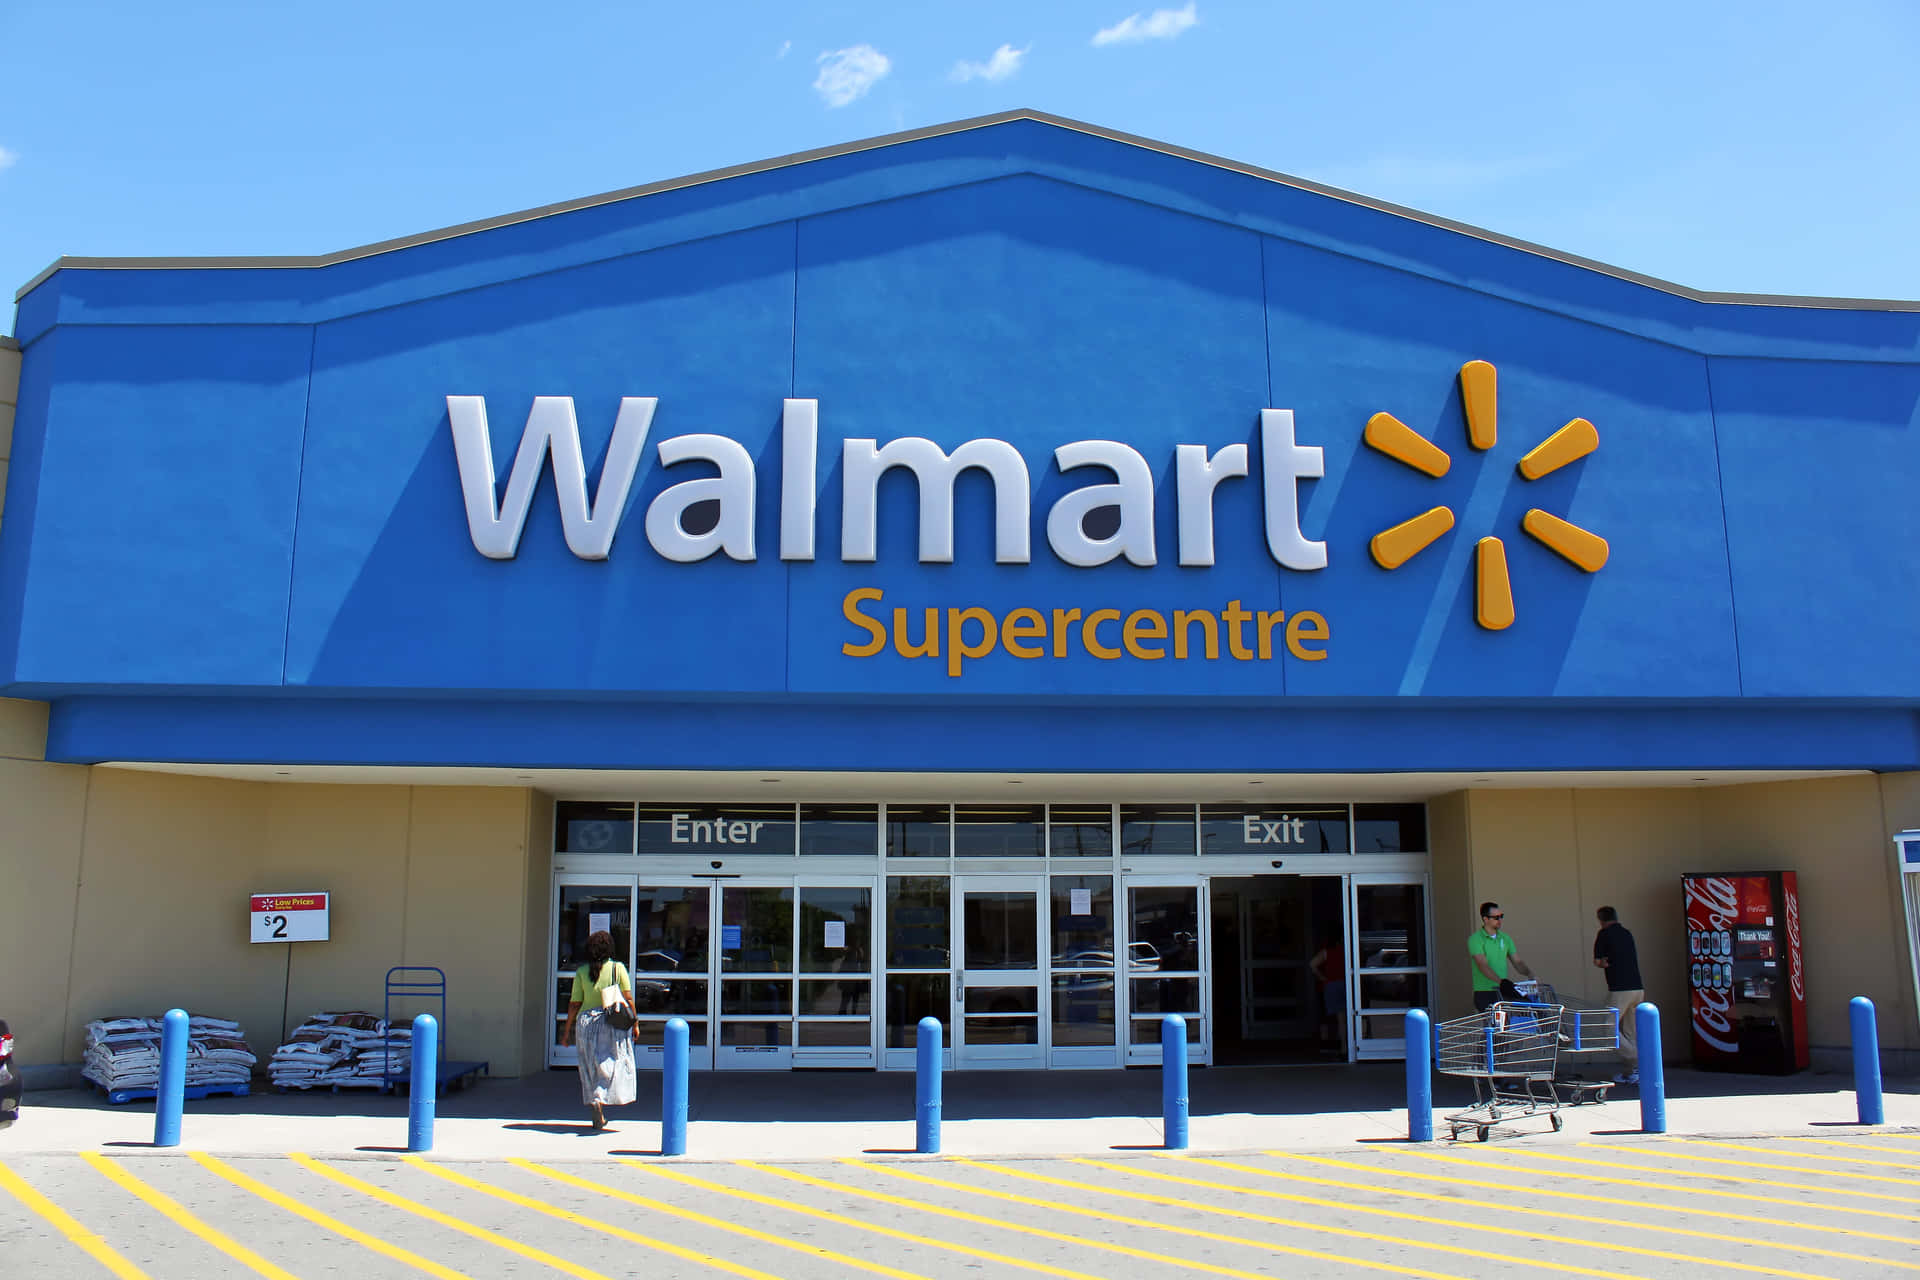 Walmartsupercenter Ist Ein Großer Laden Mit Einem Blauen Schild.